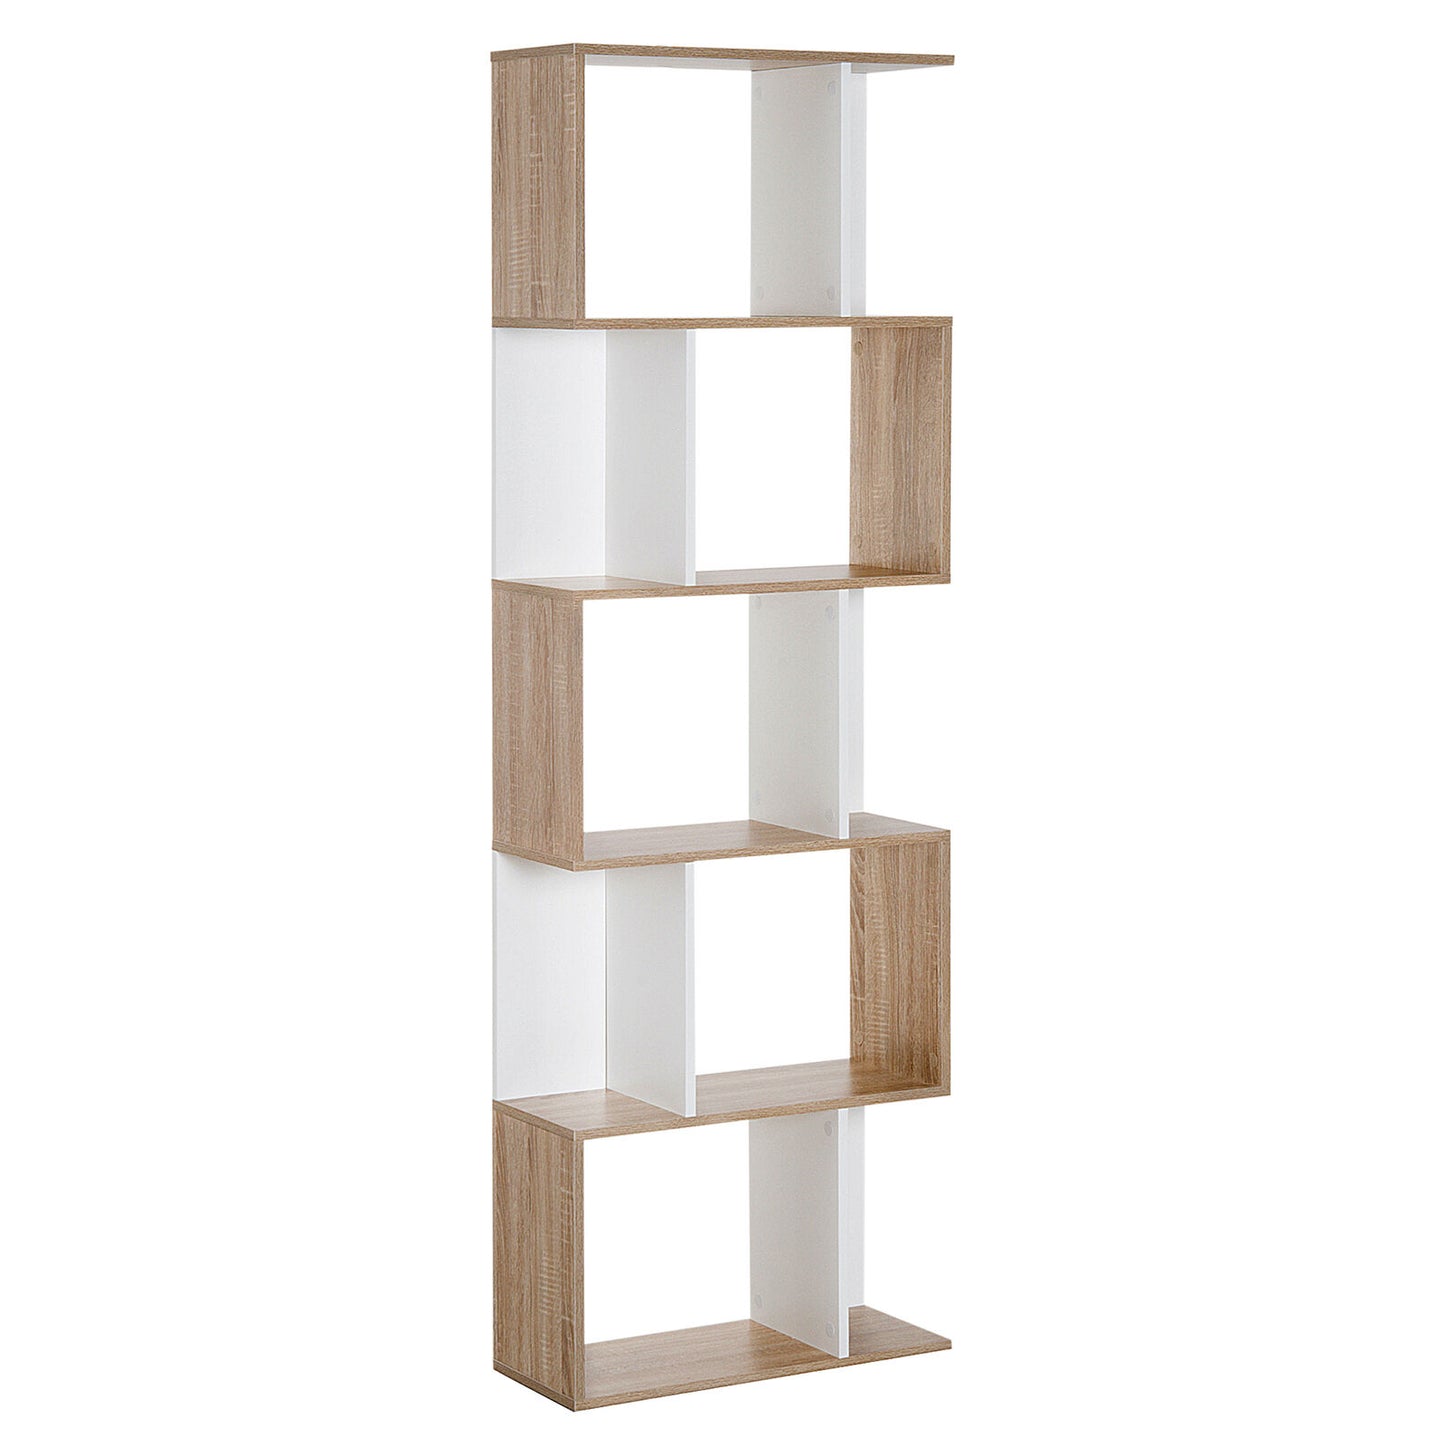 5 level storage cabinets - Wood & White